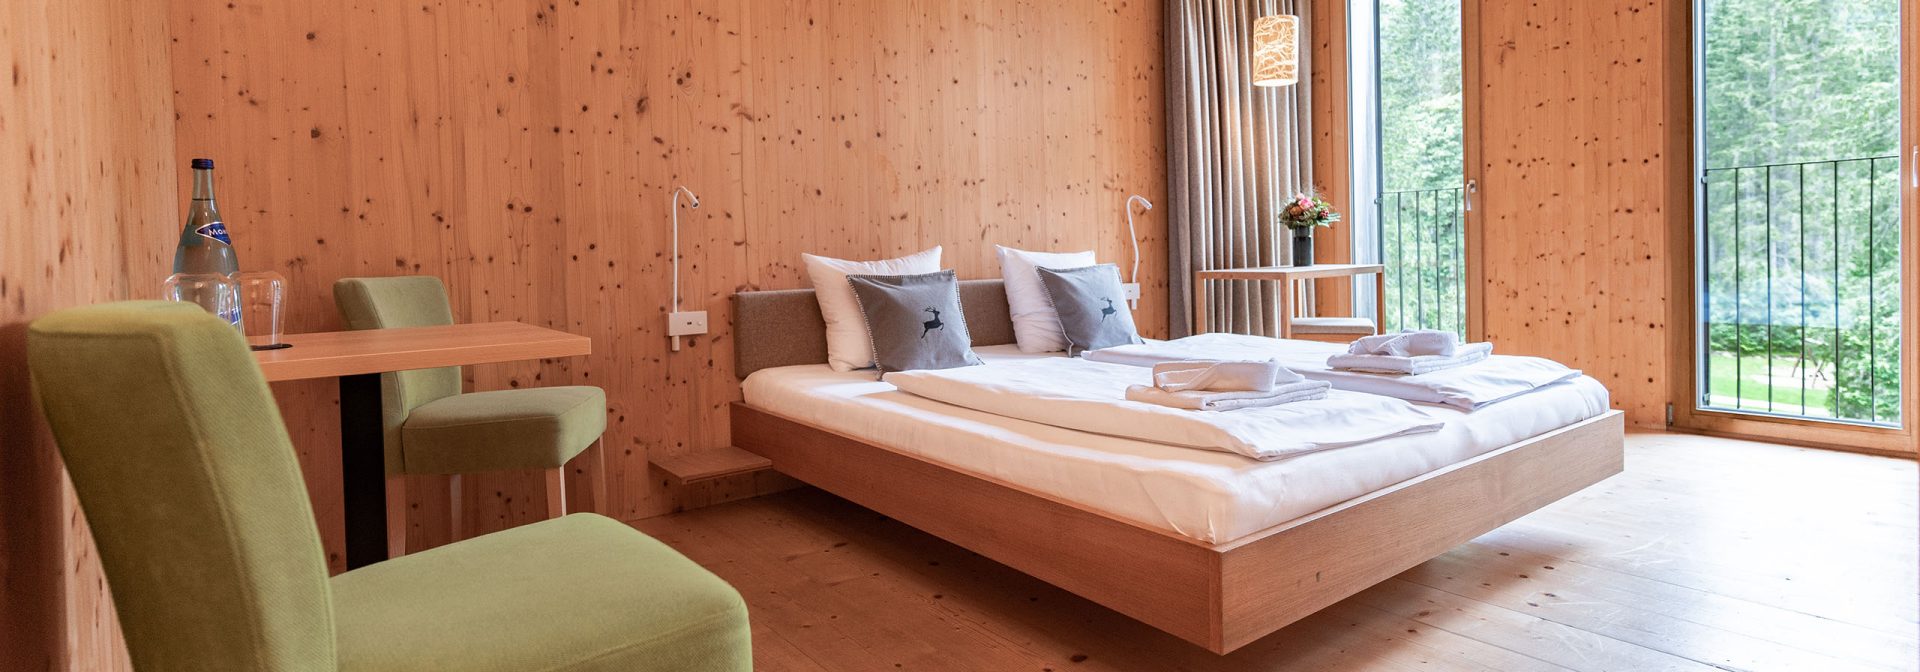 Innenansicht eines Holzverkleideten Zimmers des Alpenhotel Ammerwald.